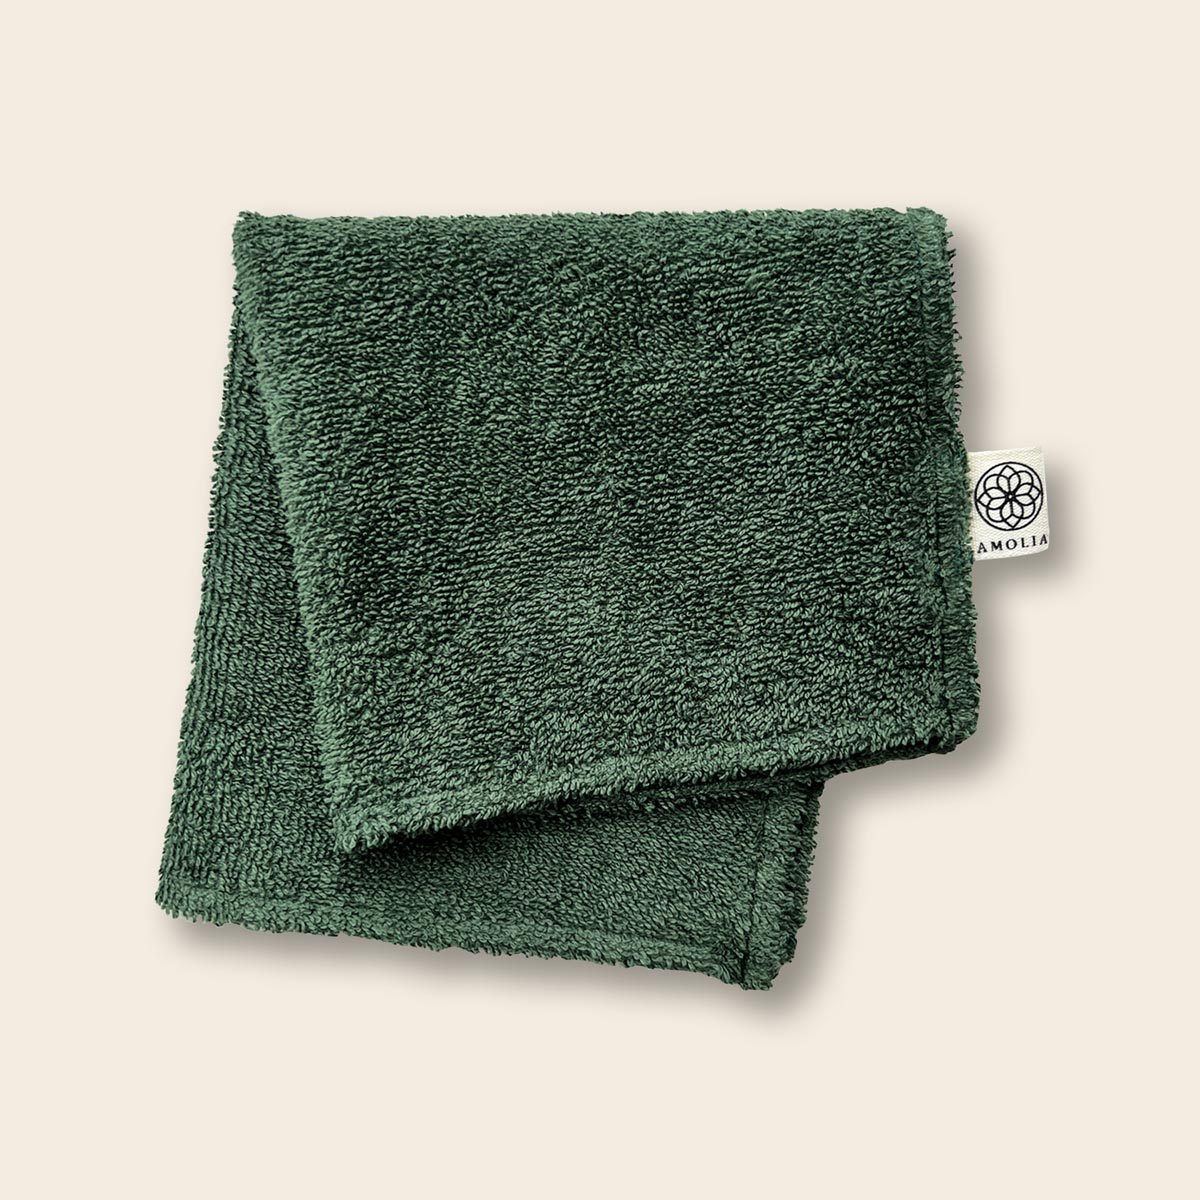 Amolia-flannel-washcloth-forest-green-1